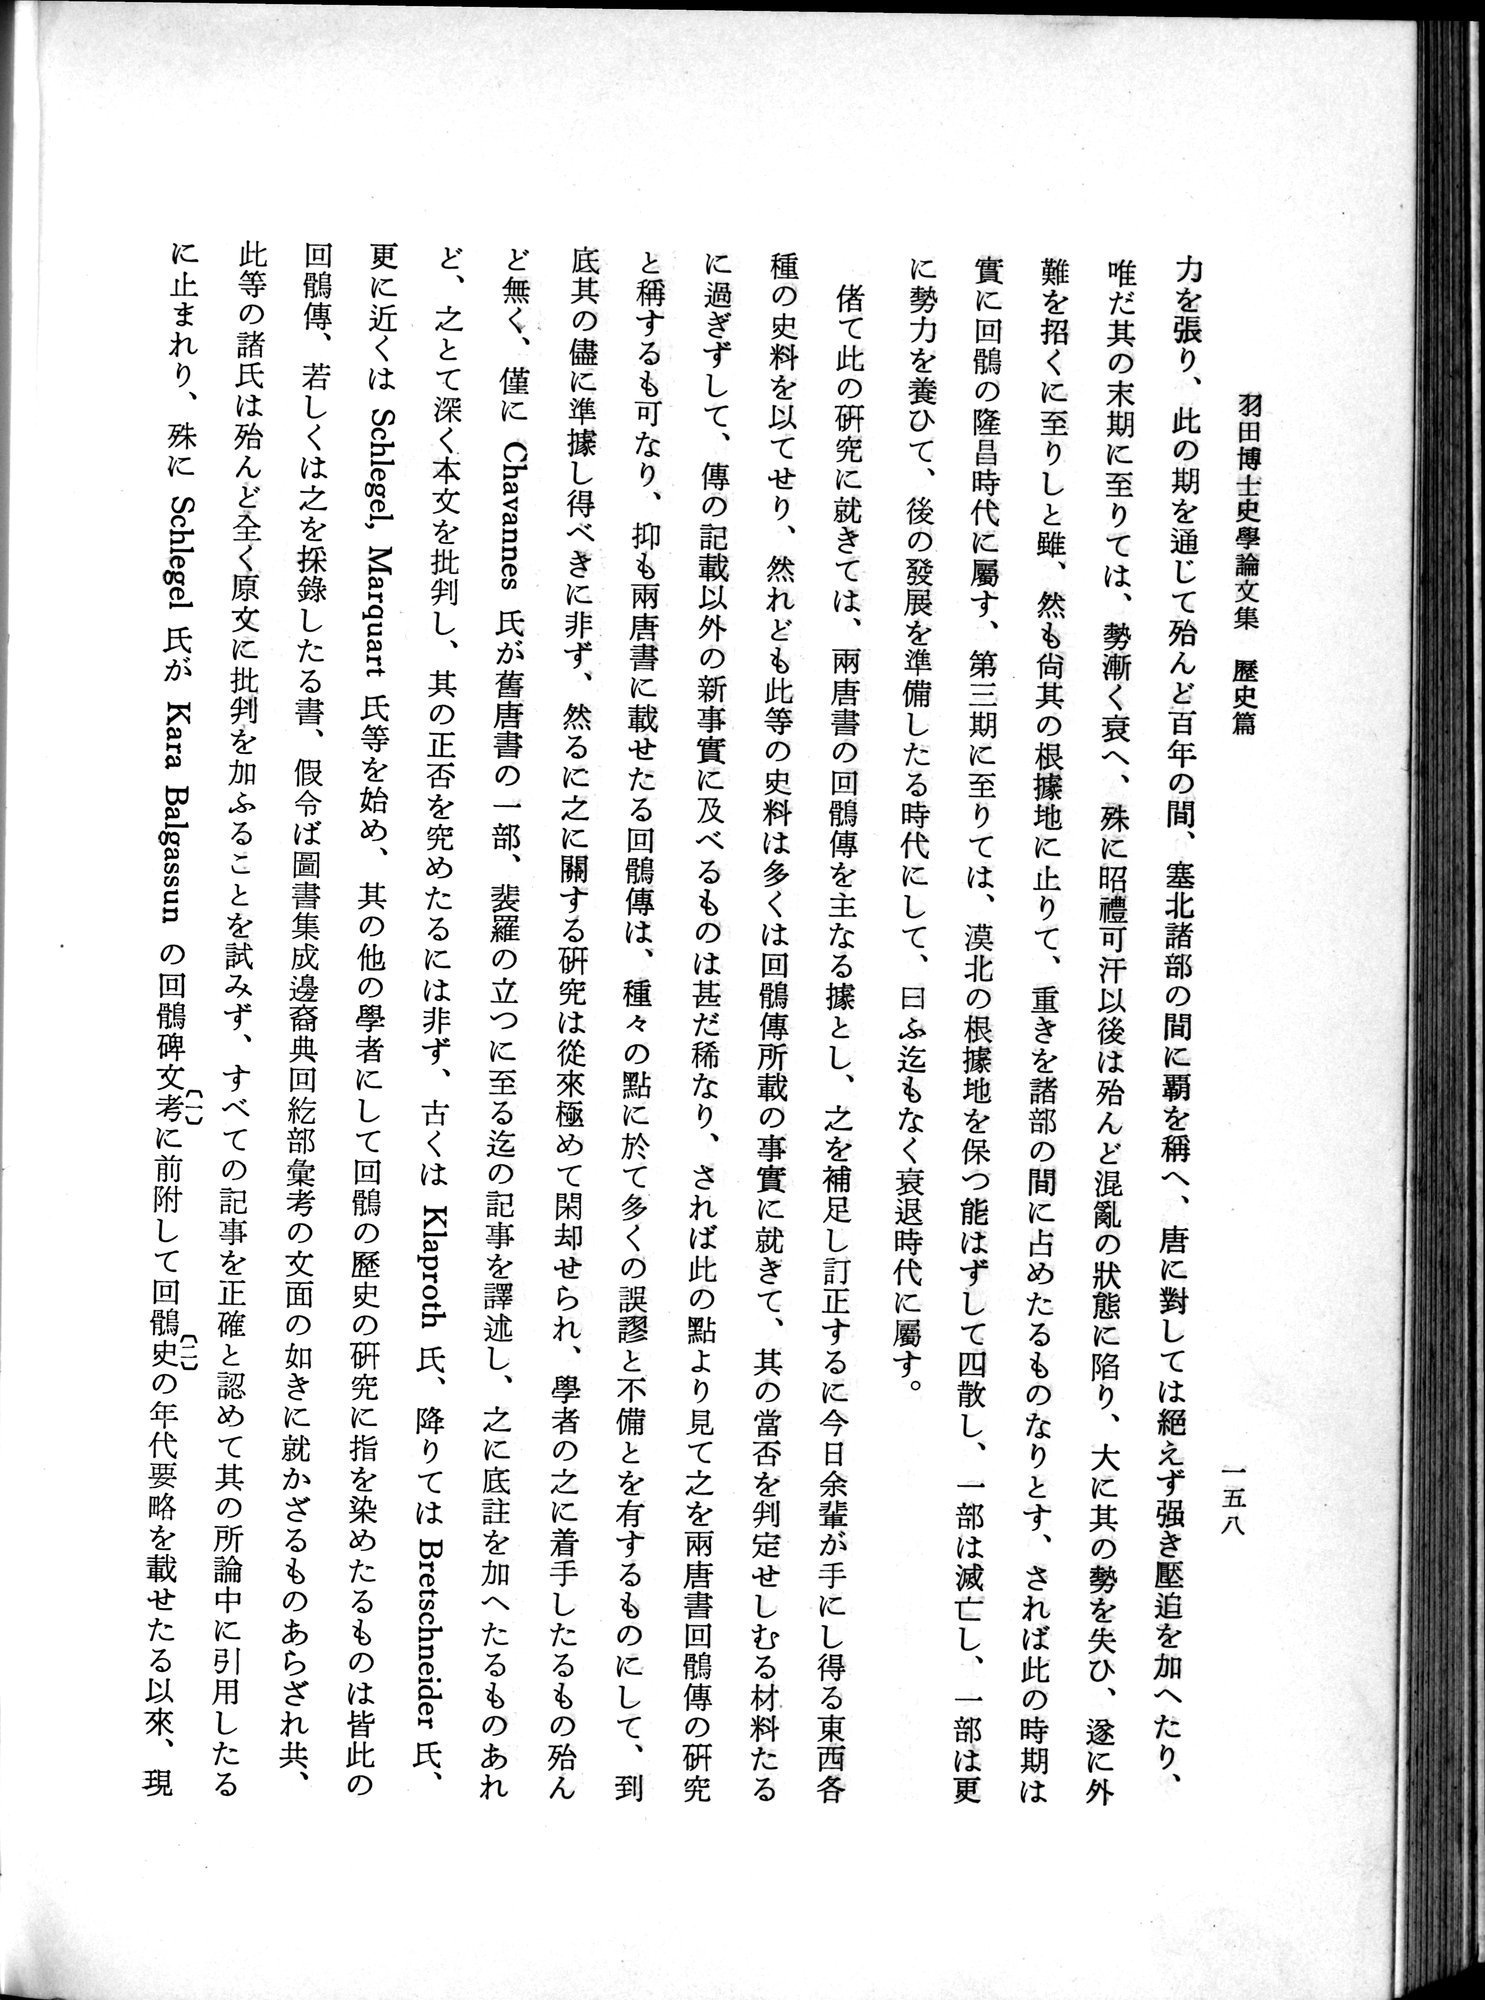 羽田博士史学論文集 : vol.1 / Page 196 (Grayscale High Resolution Image)